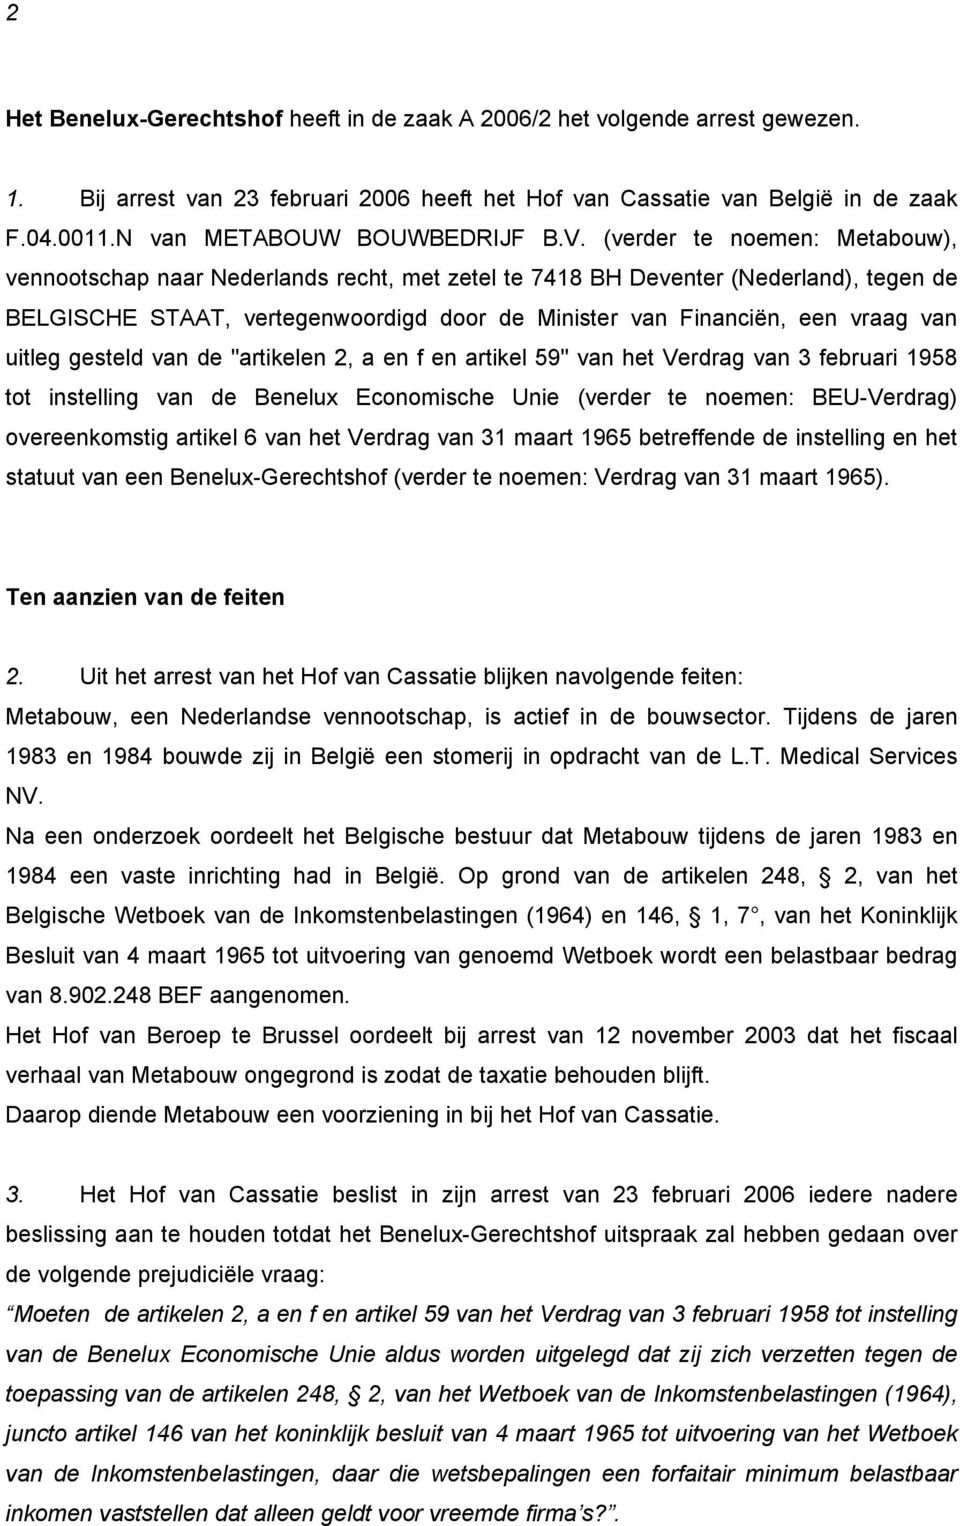 (verder te noemen: Metabouw), vennootschap naar Nederlands recht, met zetel te 7418 BH Deventer (Nederland), tegen de BELGISCHE STAAT, vertegenwoordigd door de Minister van Financiën, een vraag van